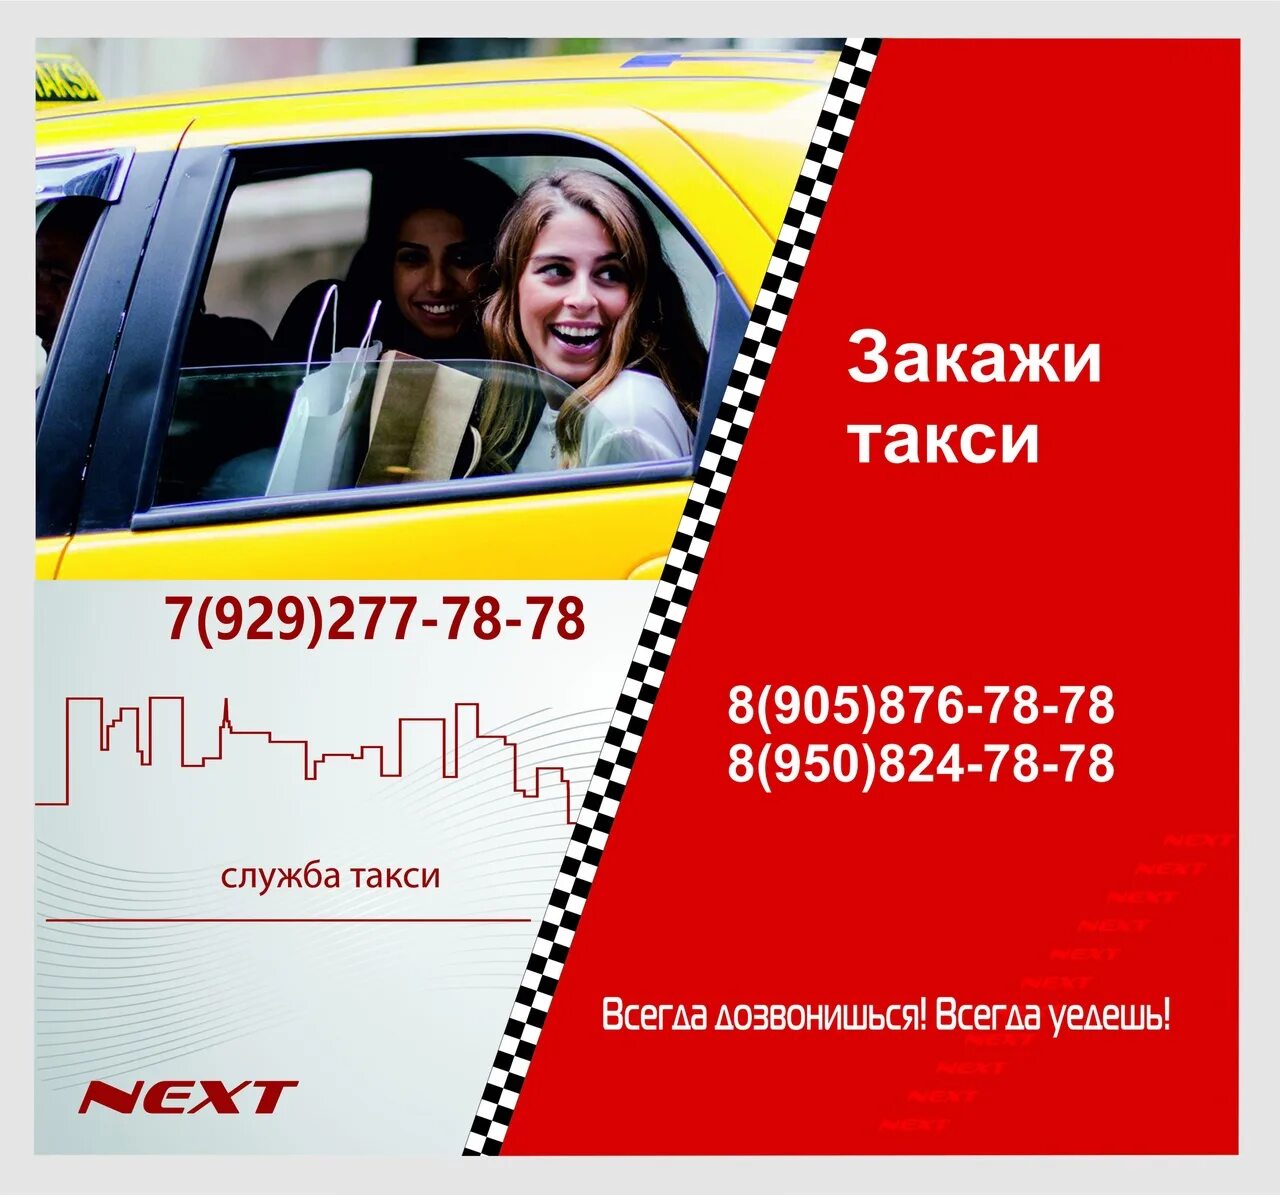 Такси next. Реклама такси. Некст такси номер. Такси Некст Валуйки. Такси некст номер телефона